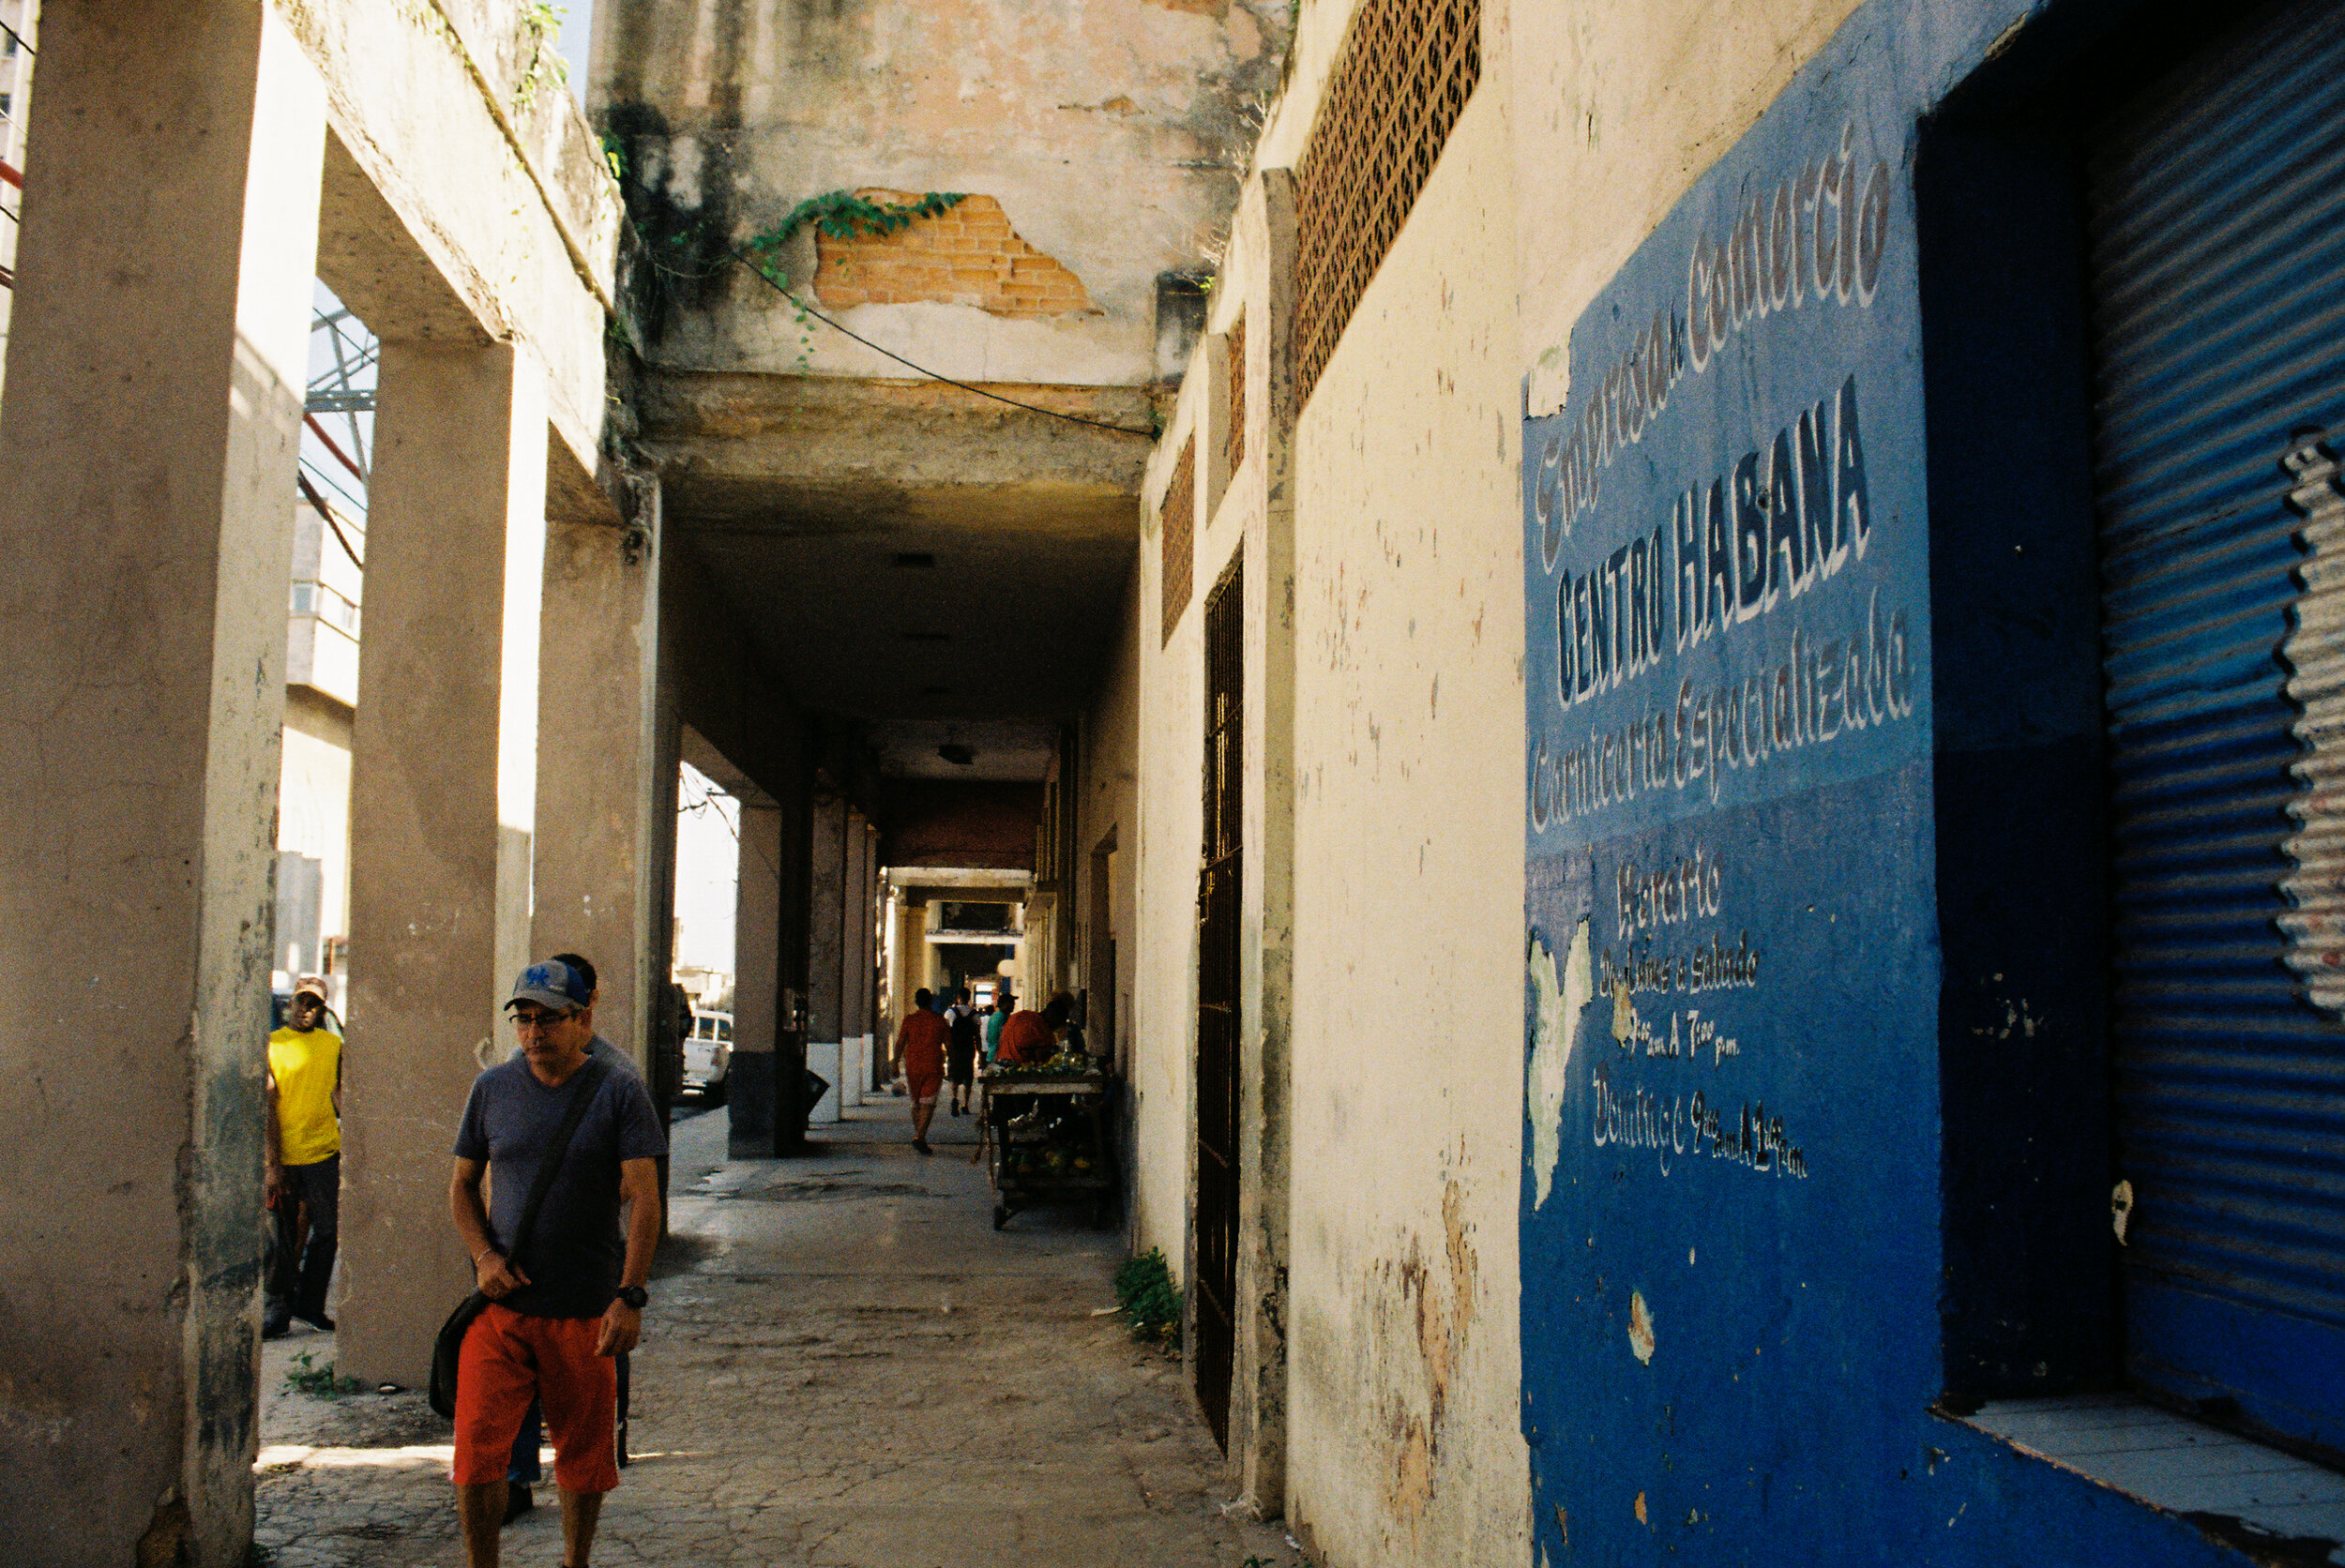 Cuba_35mm-5.jpg